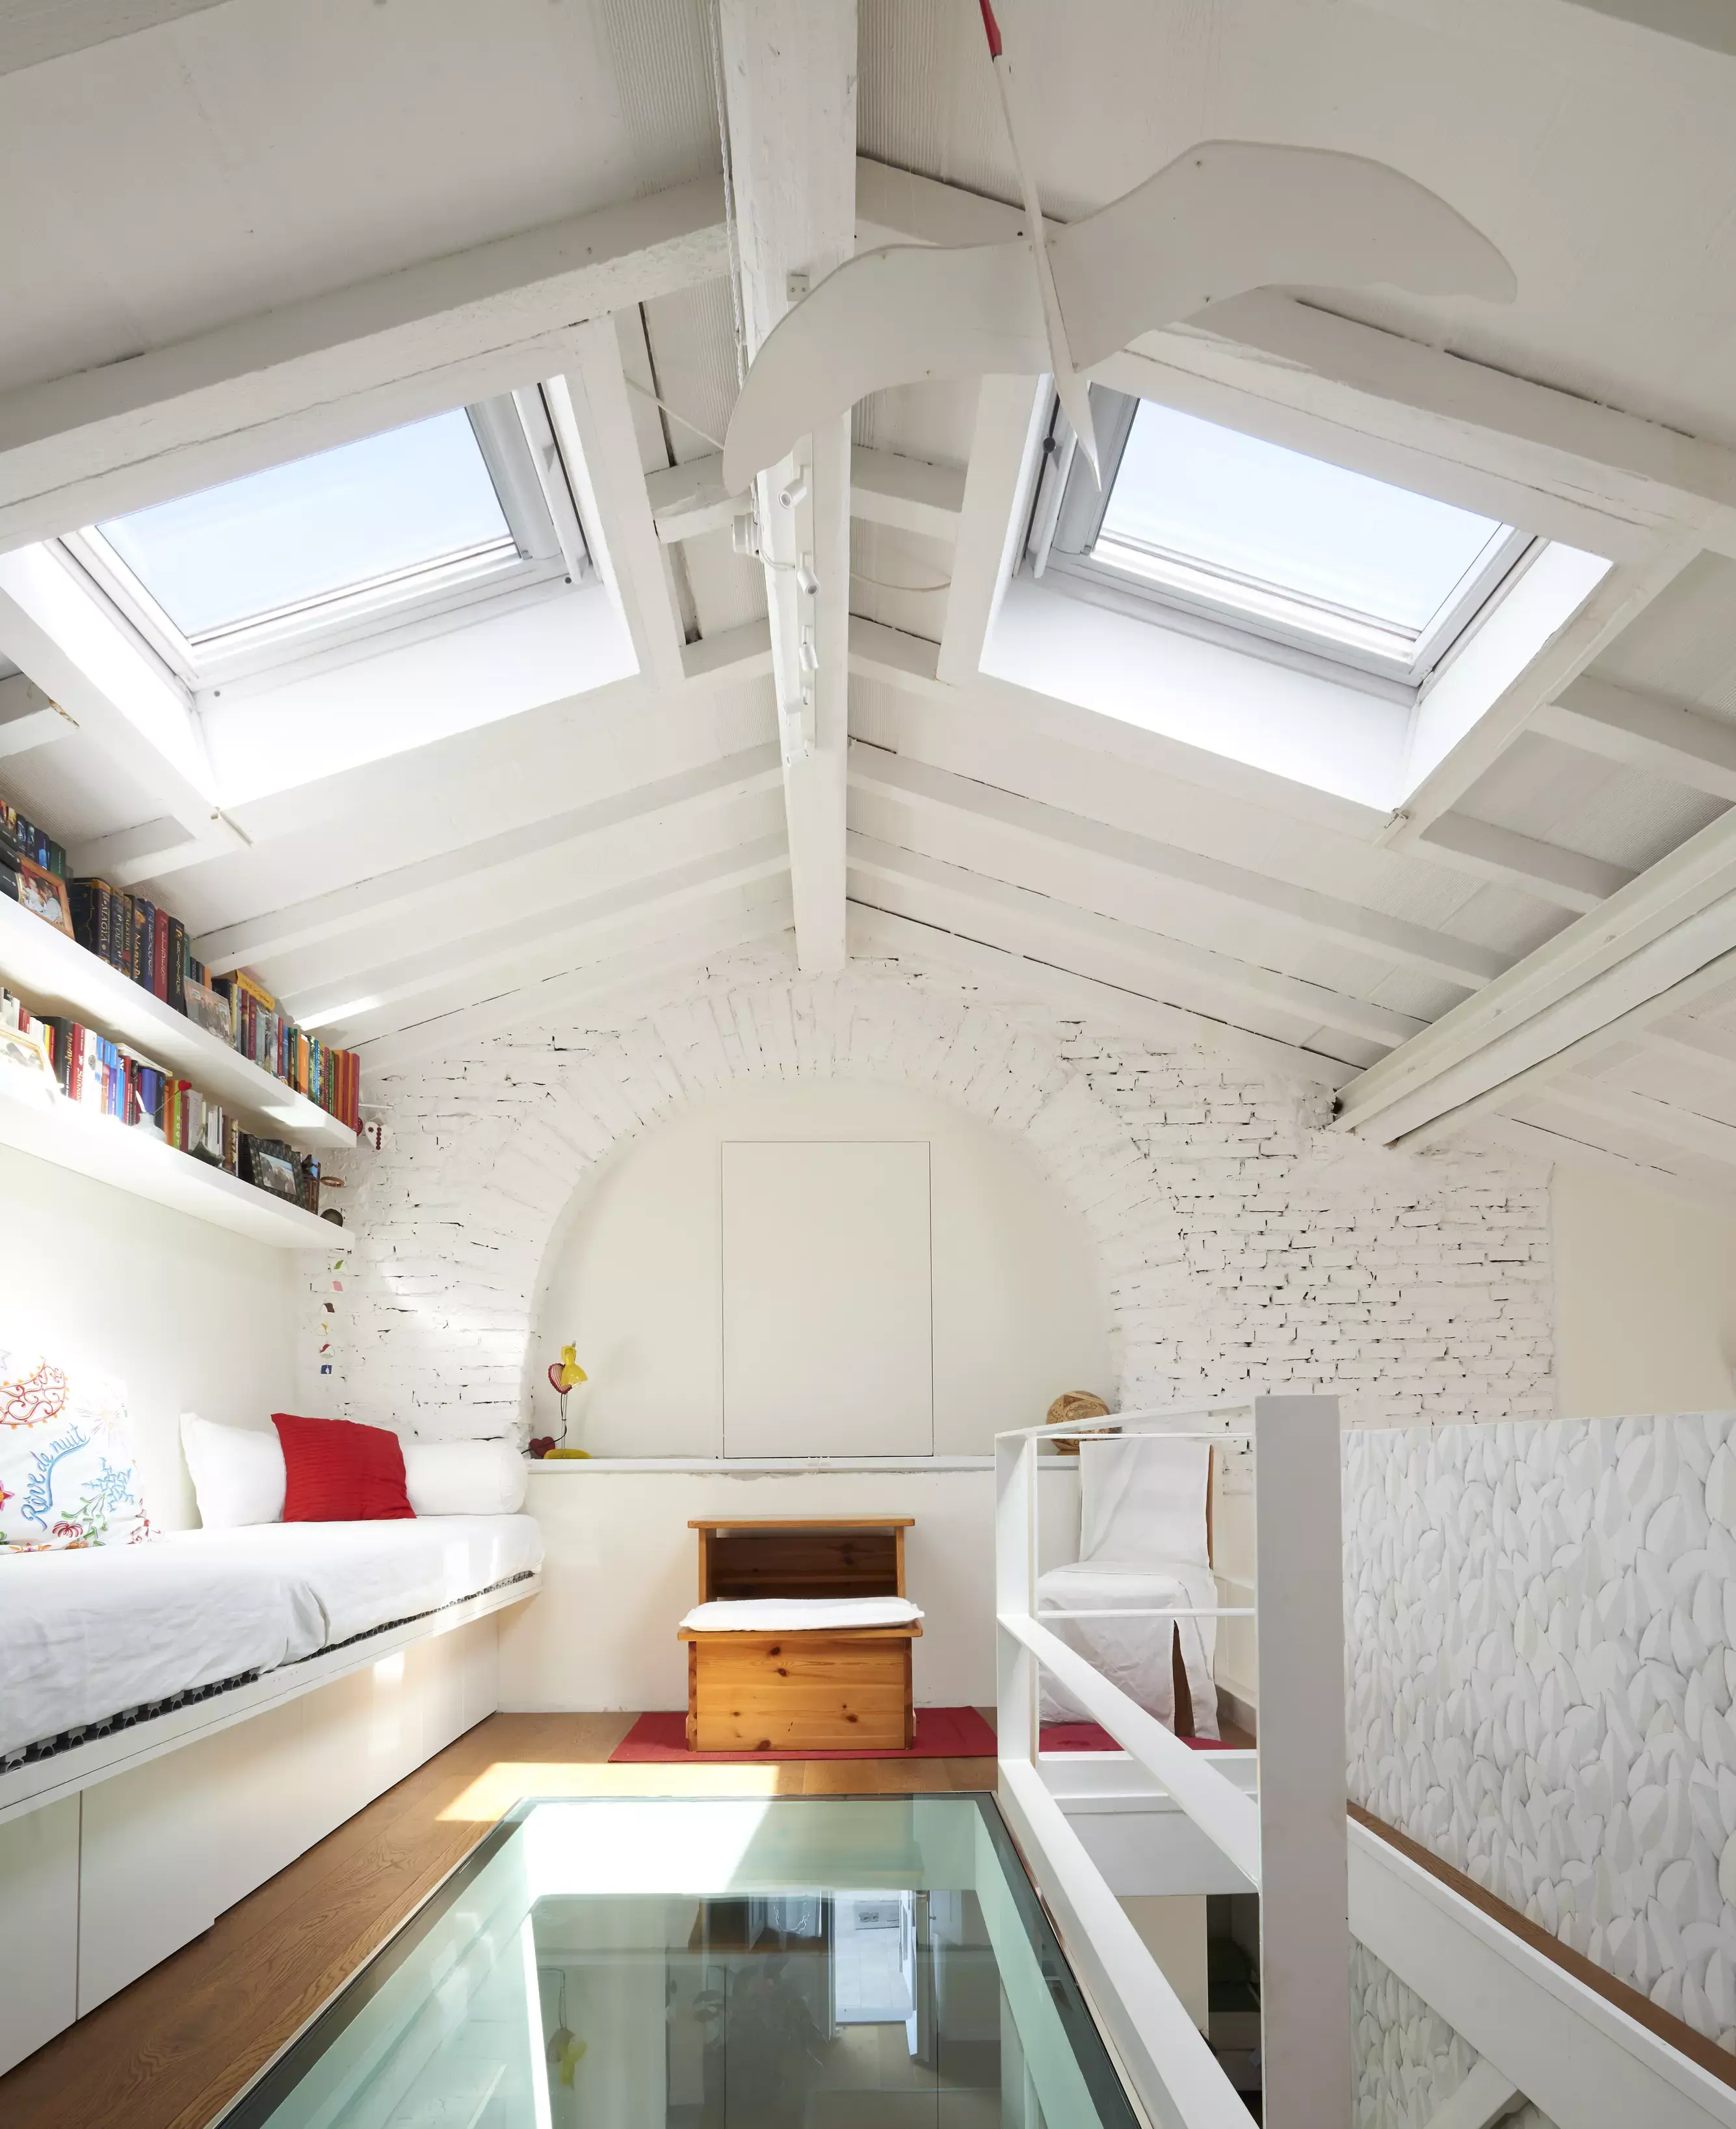 Camera da letto mansarda con finestre per tetti VELUX, muri di mattoni bianchi e dettaglio del pavimento in vetro.